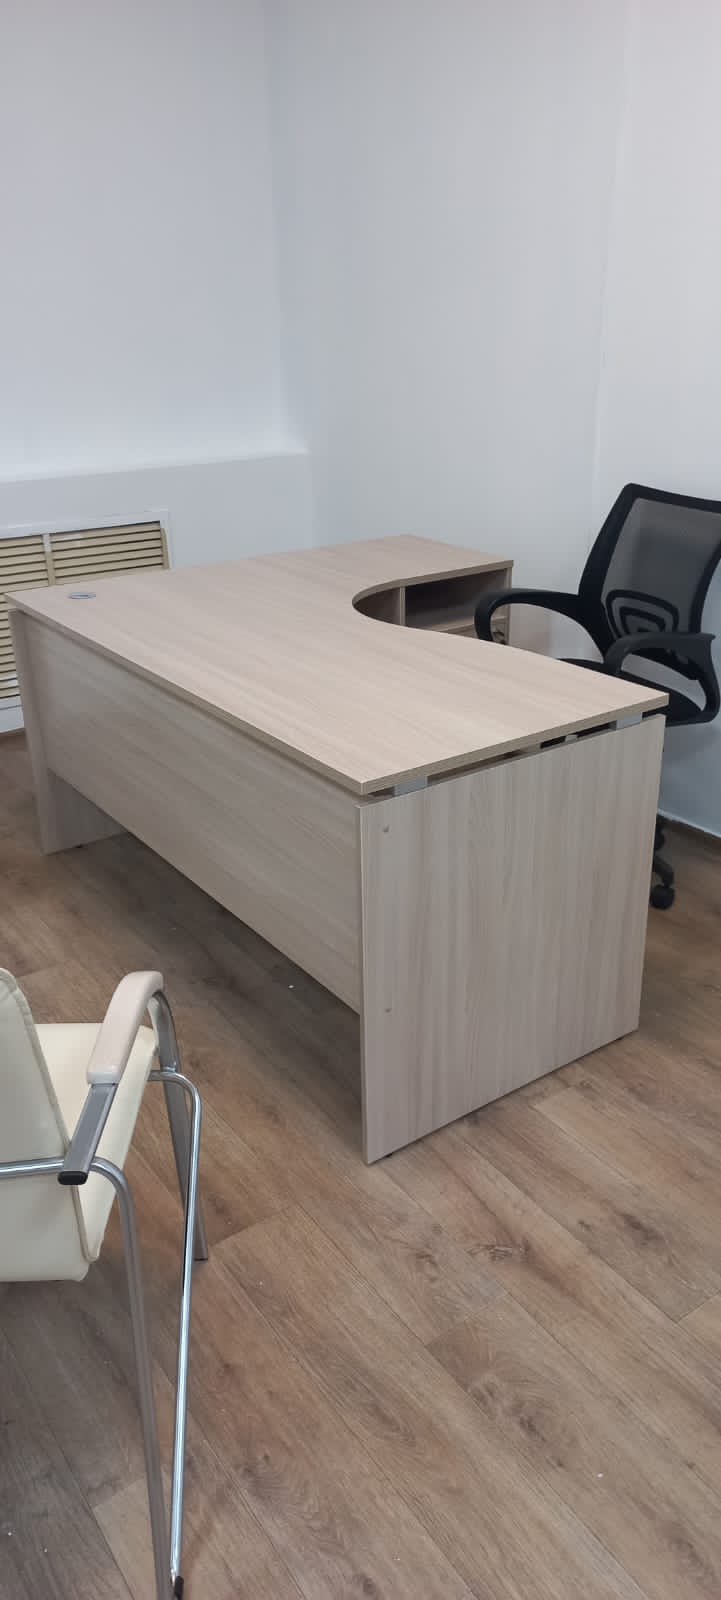 Офисные столы Новосибирск